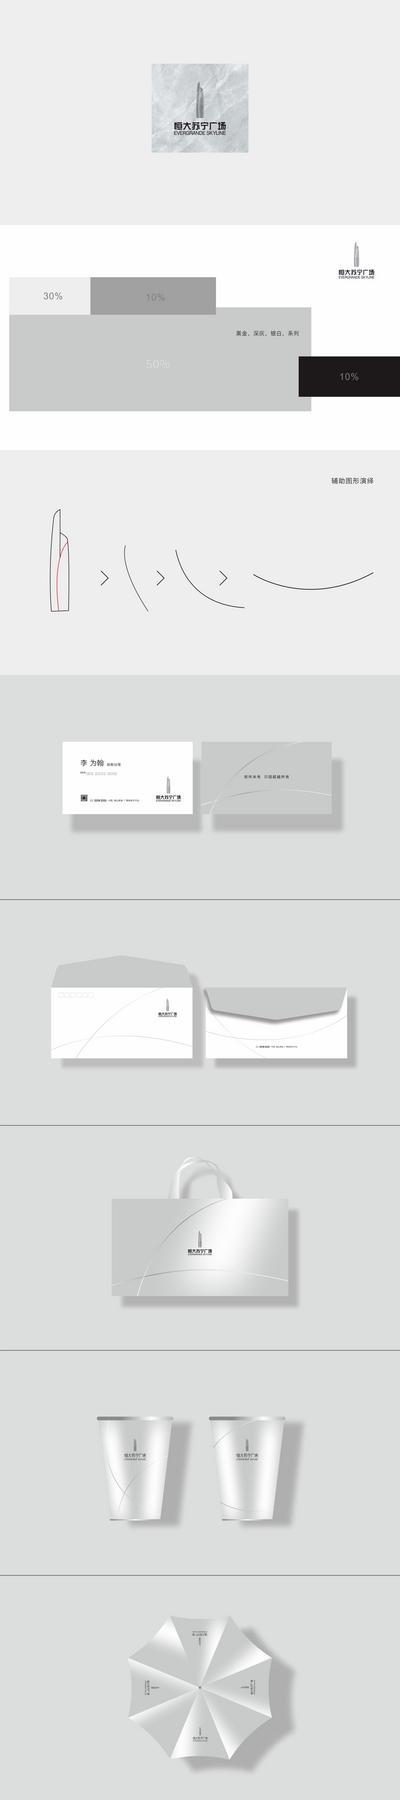 南门网 VI 提案 房地产 调性 logo设计 物料 信封 纸杯 名片 手提袋